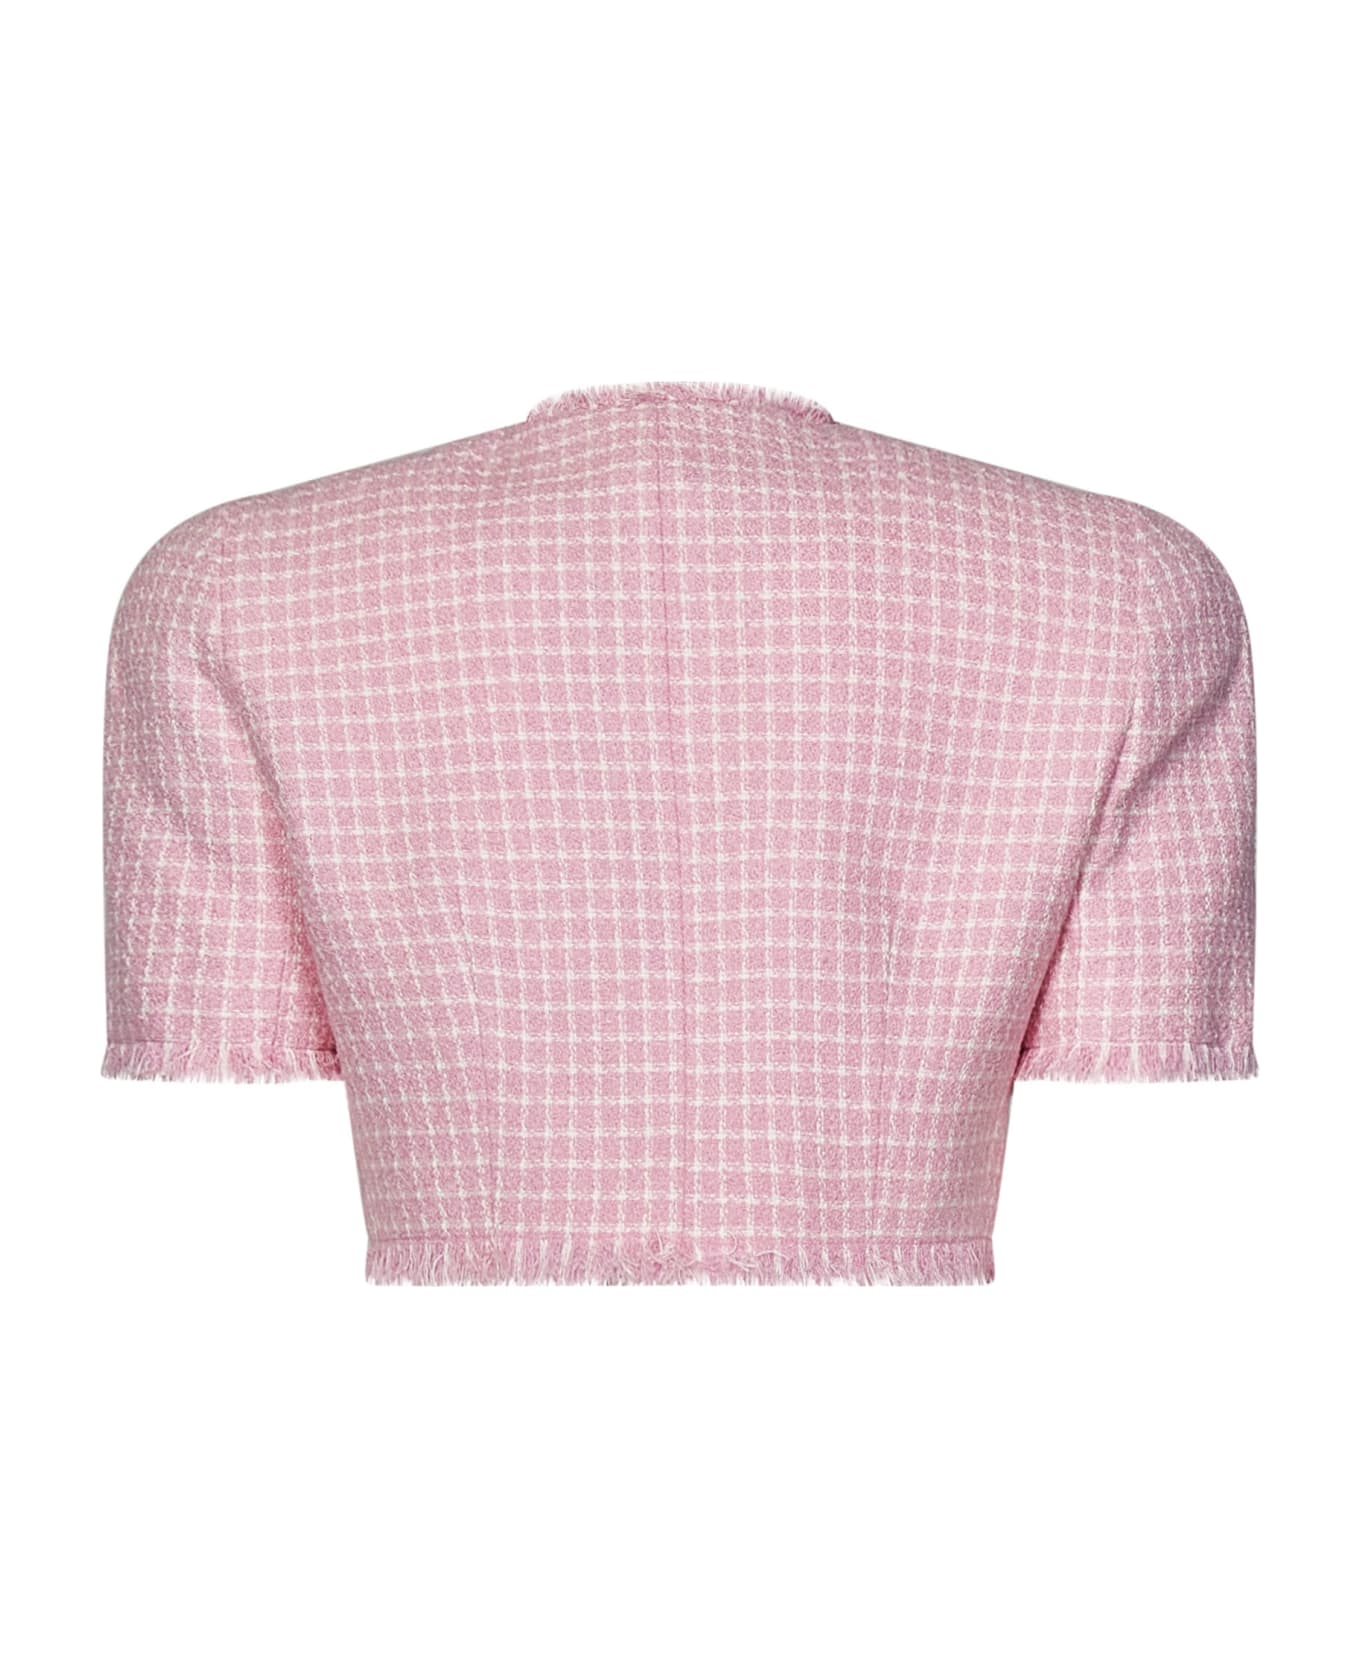 Balmain Jacket - Pink